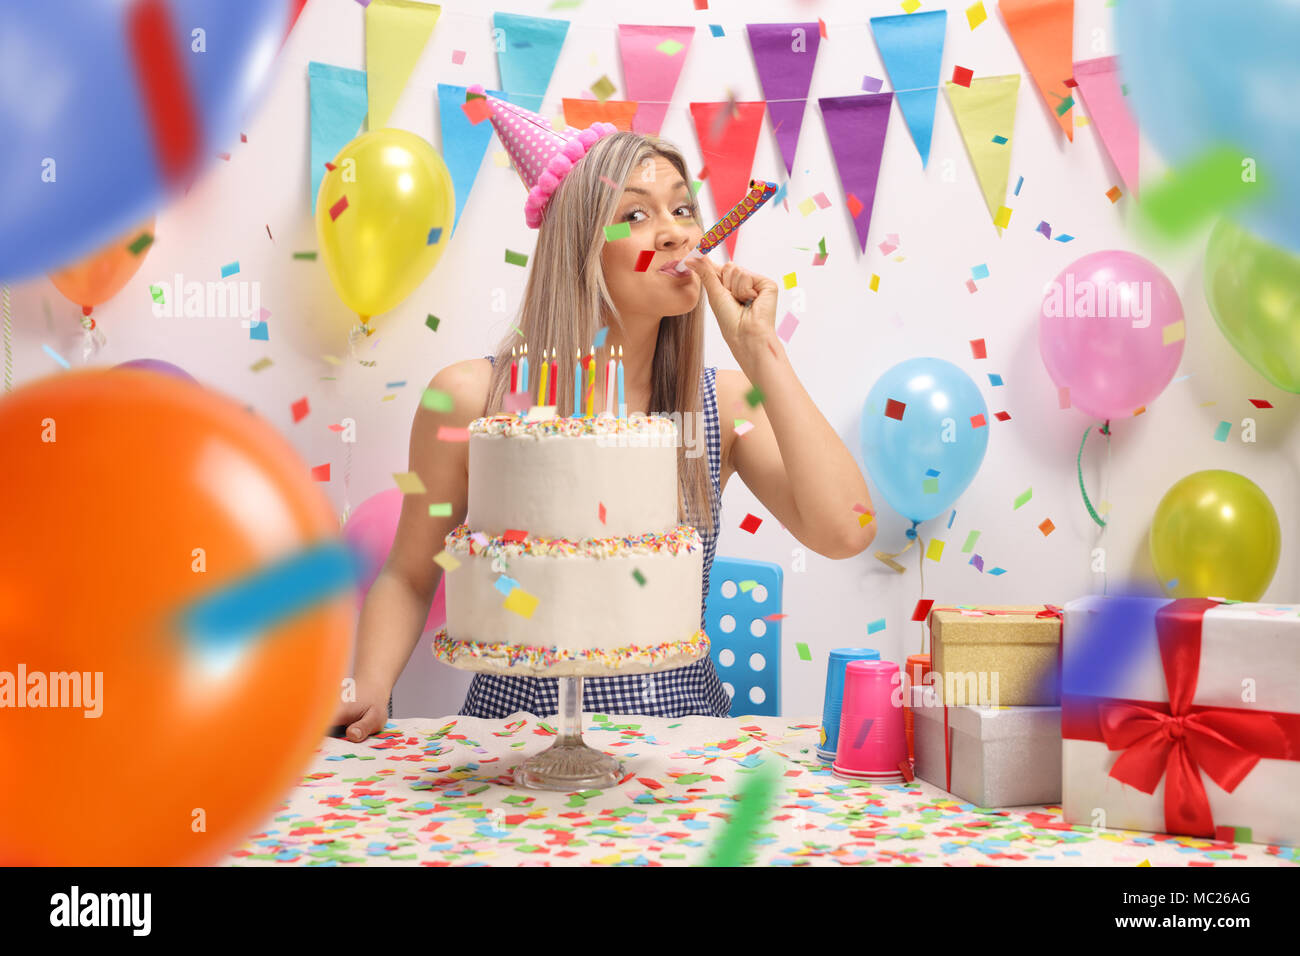 Junge Frau mit einem Geburtstagskuchen Blasen einer Partei Horn gegen eine Wand mit Ballons und Dekoration Fahnen Stockfoto